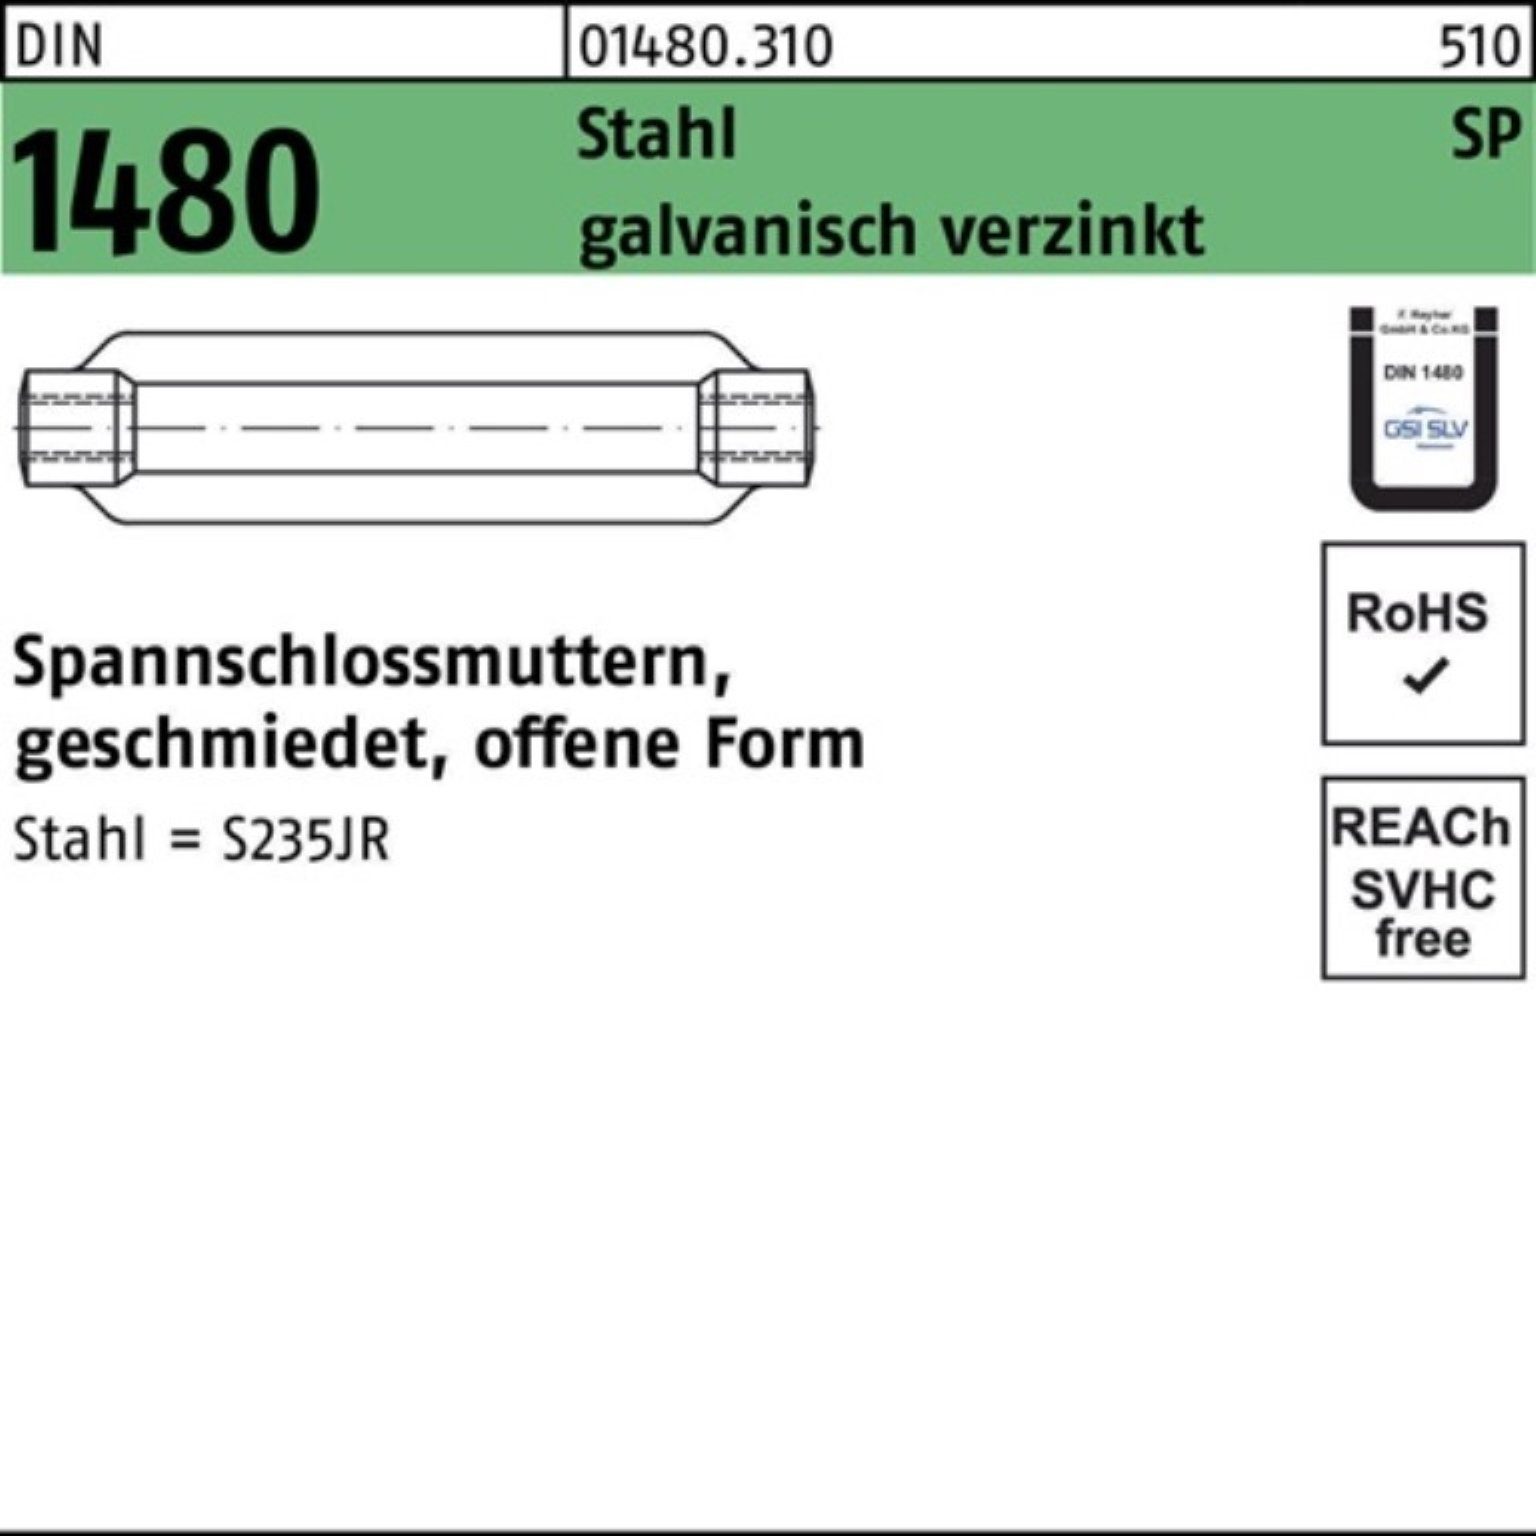 ÜZ Spannschlossmutter offen 1480 Reyher 100er M16/170 galv Stahl DIN SP Spannschloss Pack